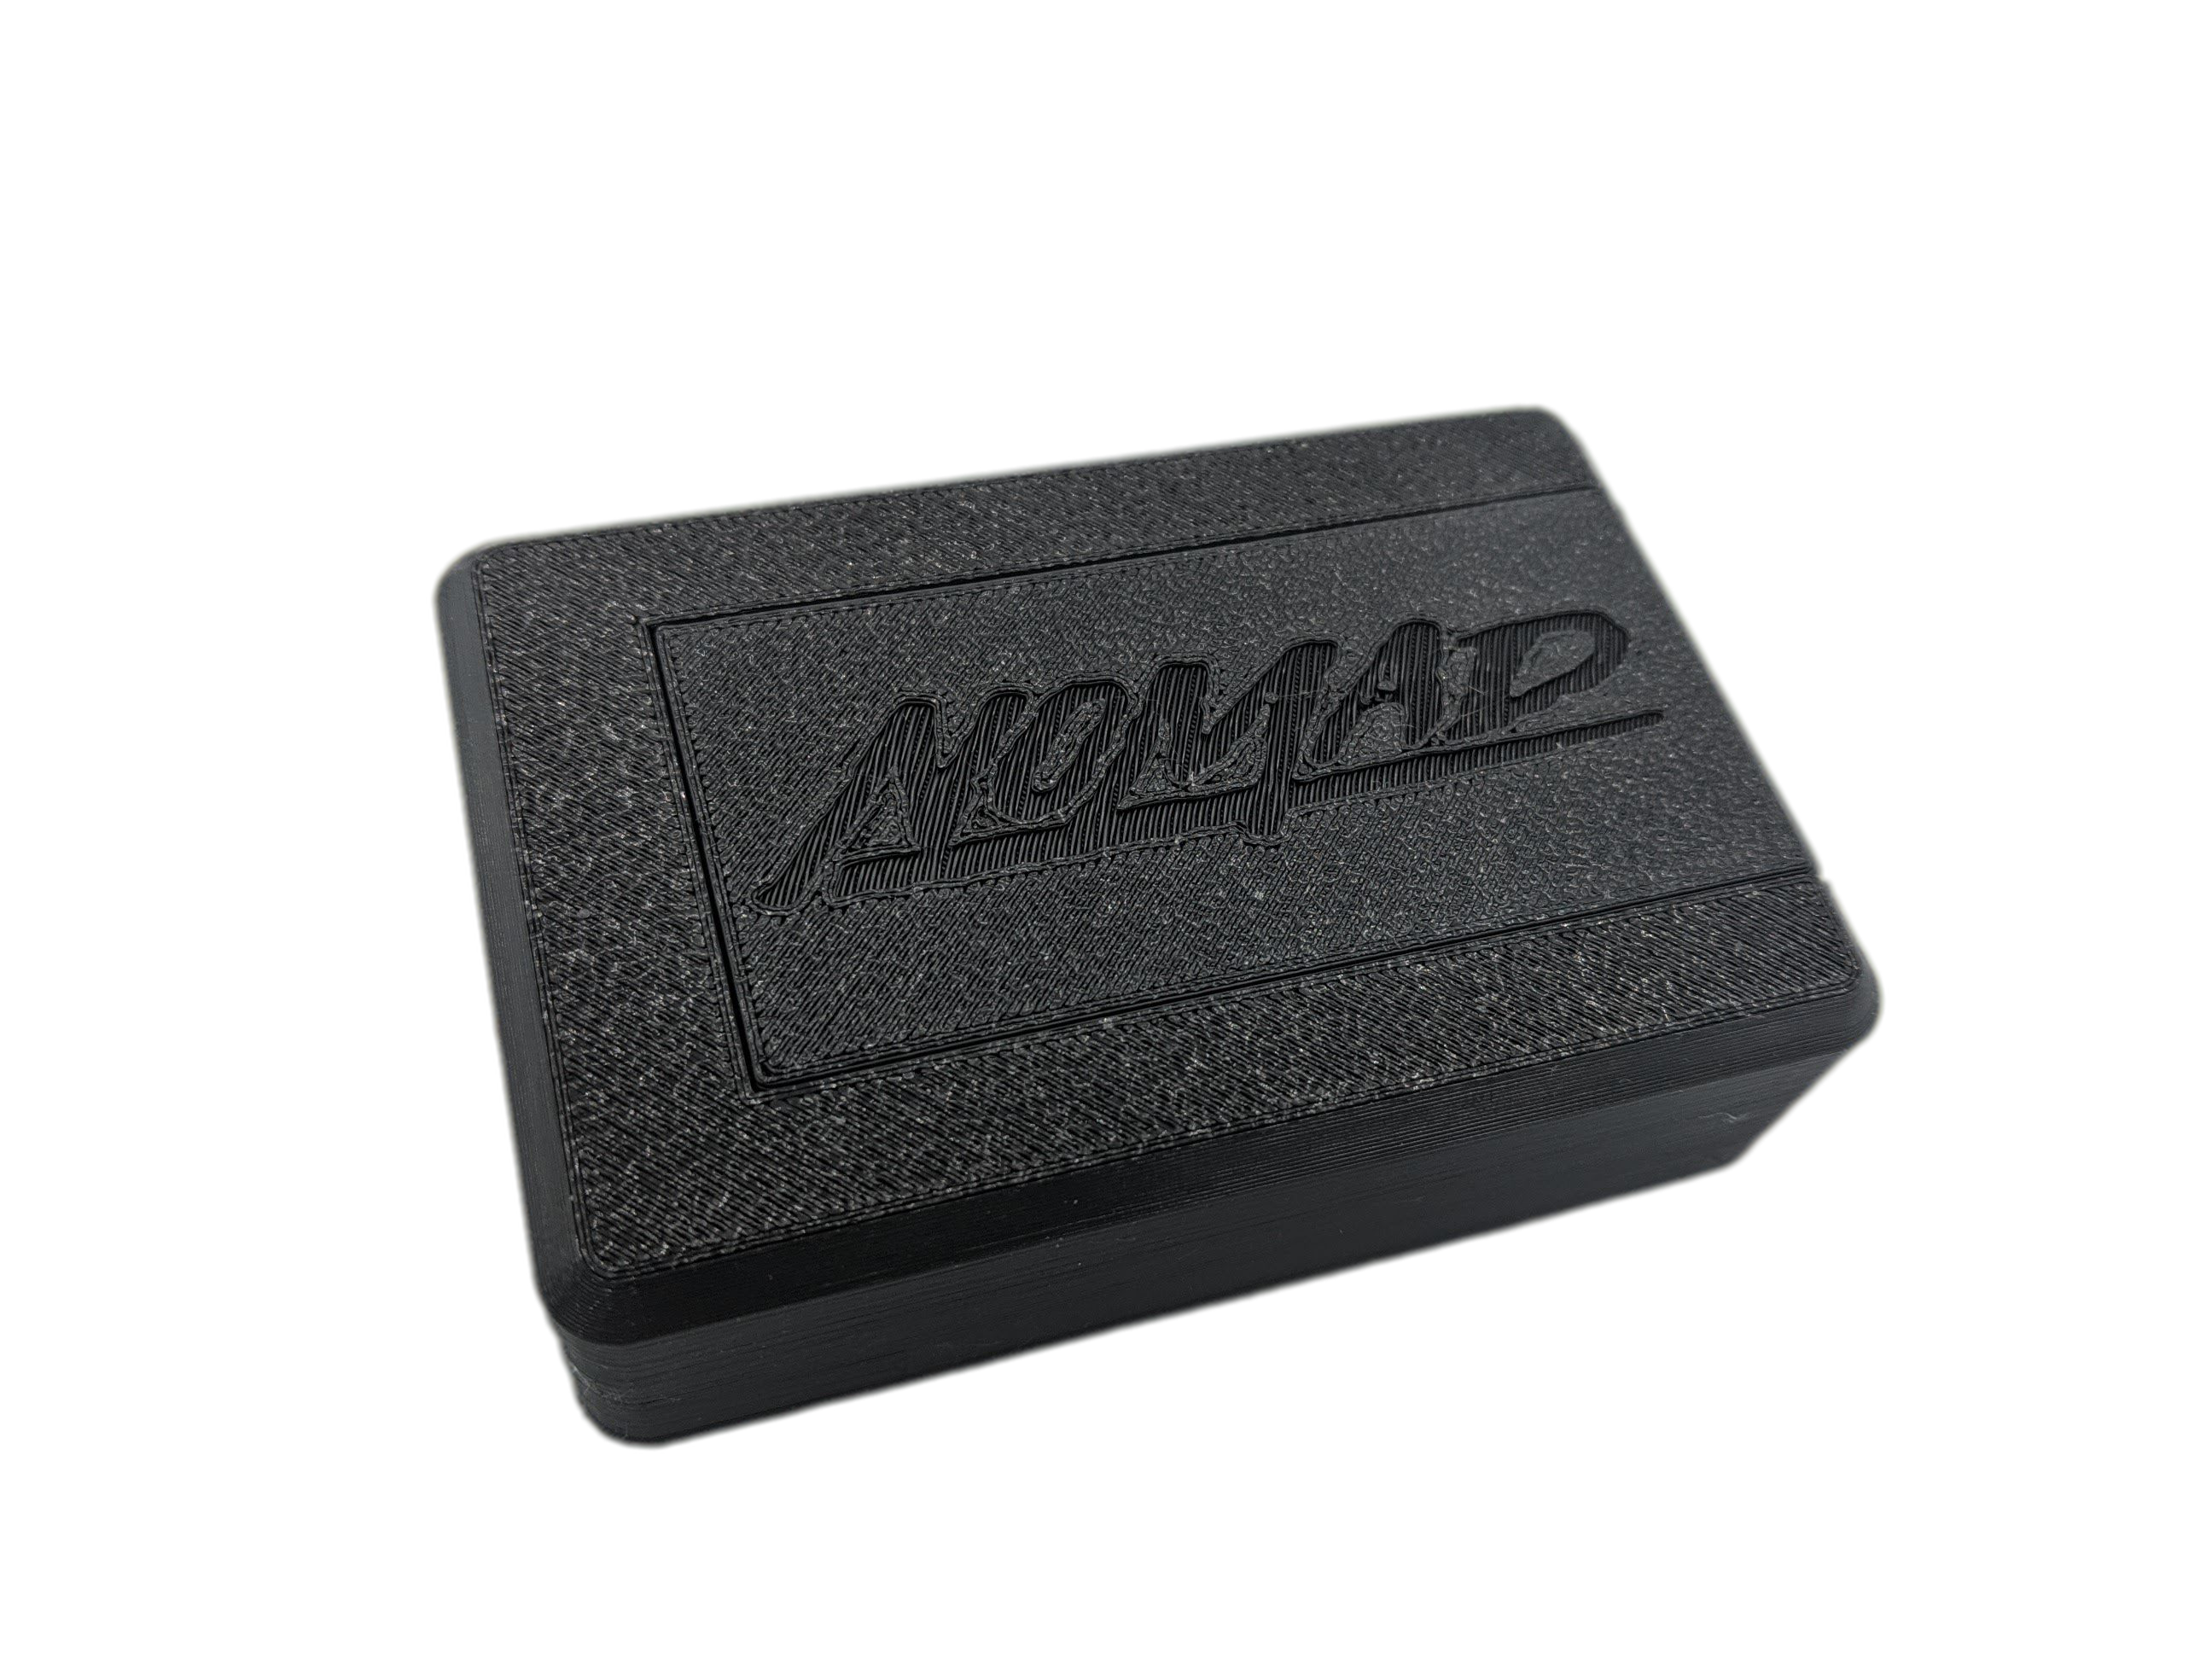 Sega Nomad 18650 Lithium Battery Pack Kit